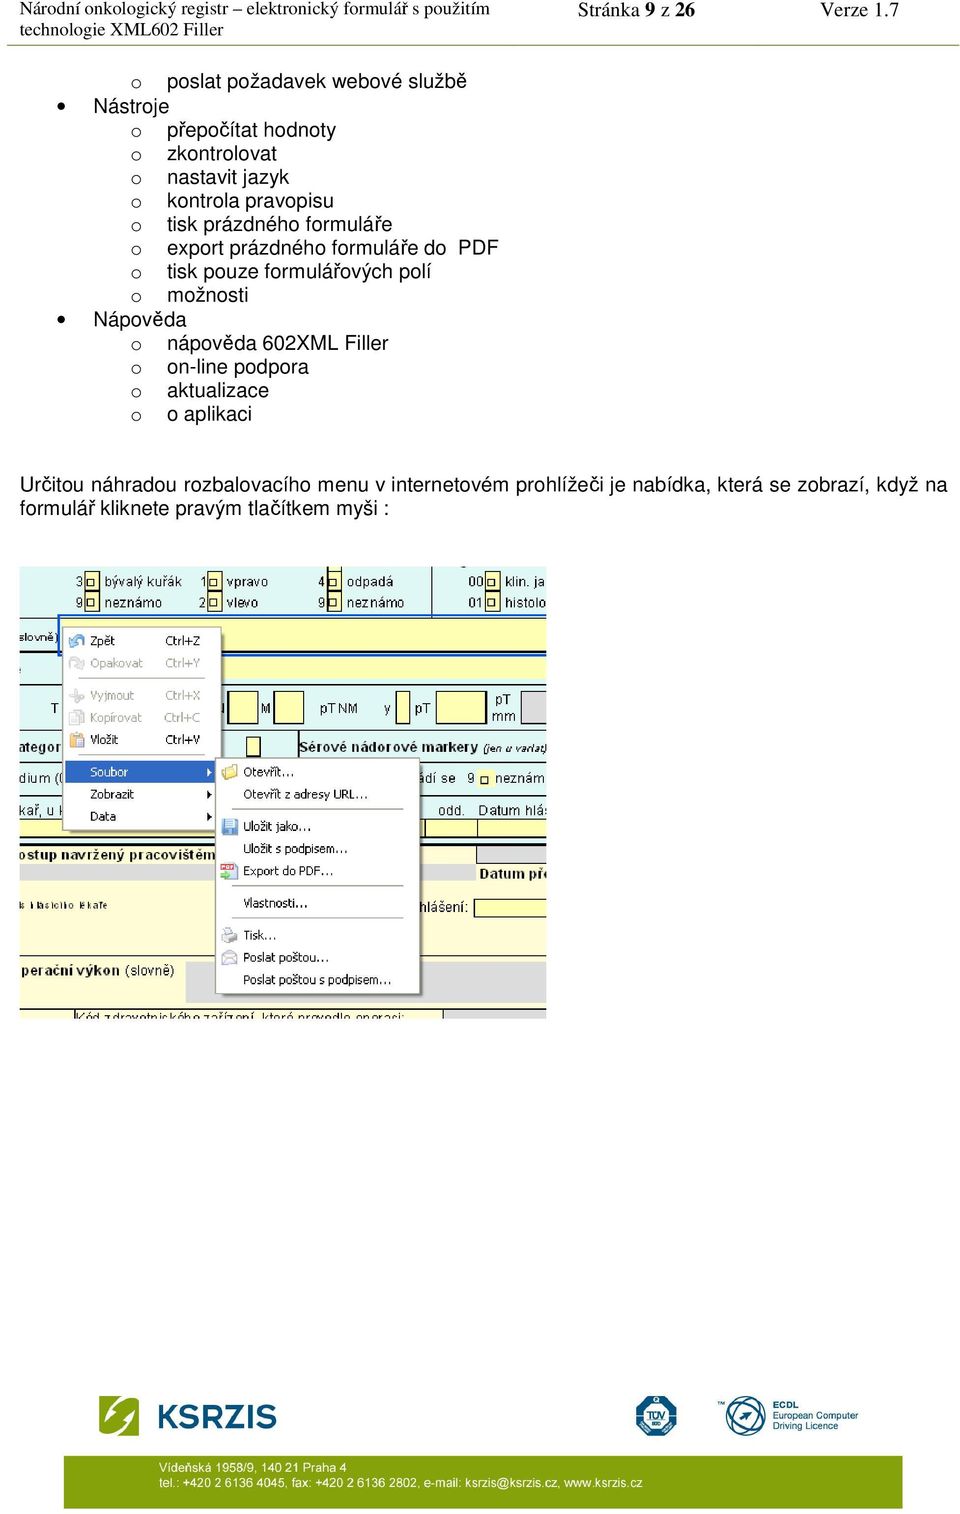 pravopisu o tisk prázdného formuláře o export prázdného formuláře do PDF o tisk pouze formulářových polí o možnosti